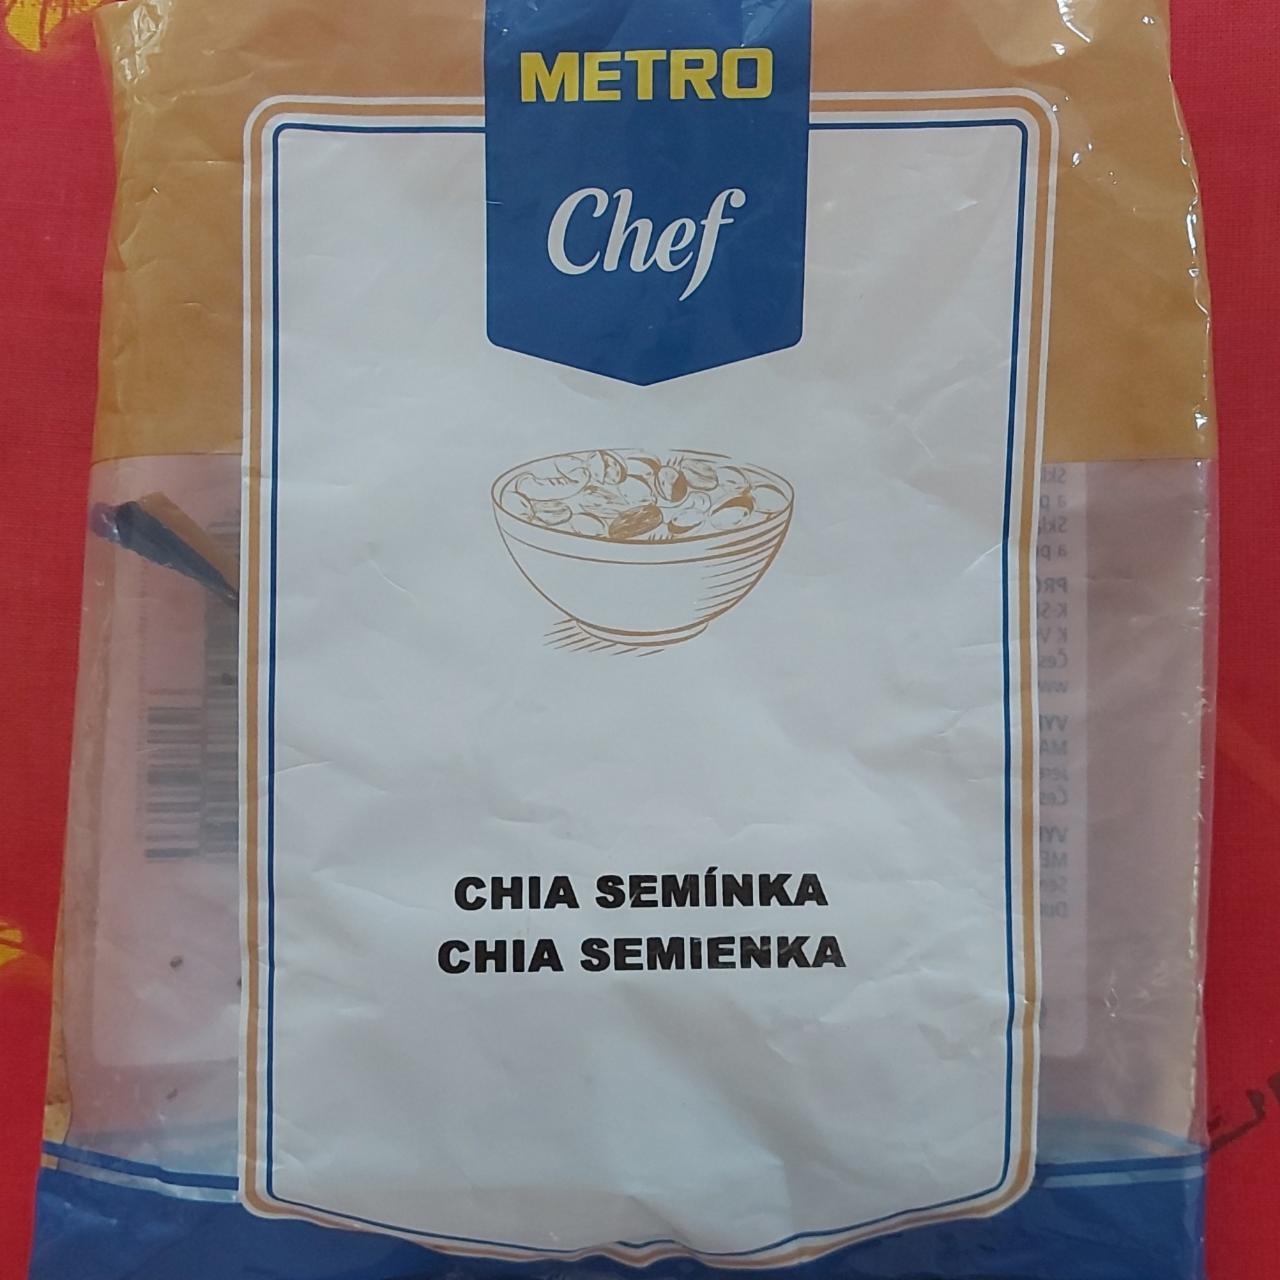 Fotografie - Chia semínka Metro Chef